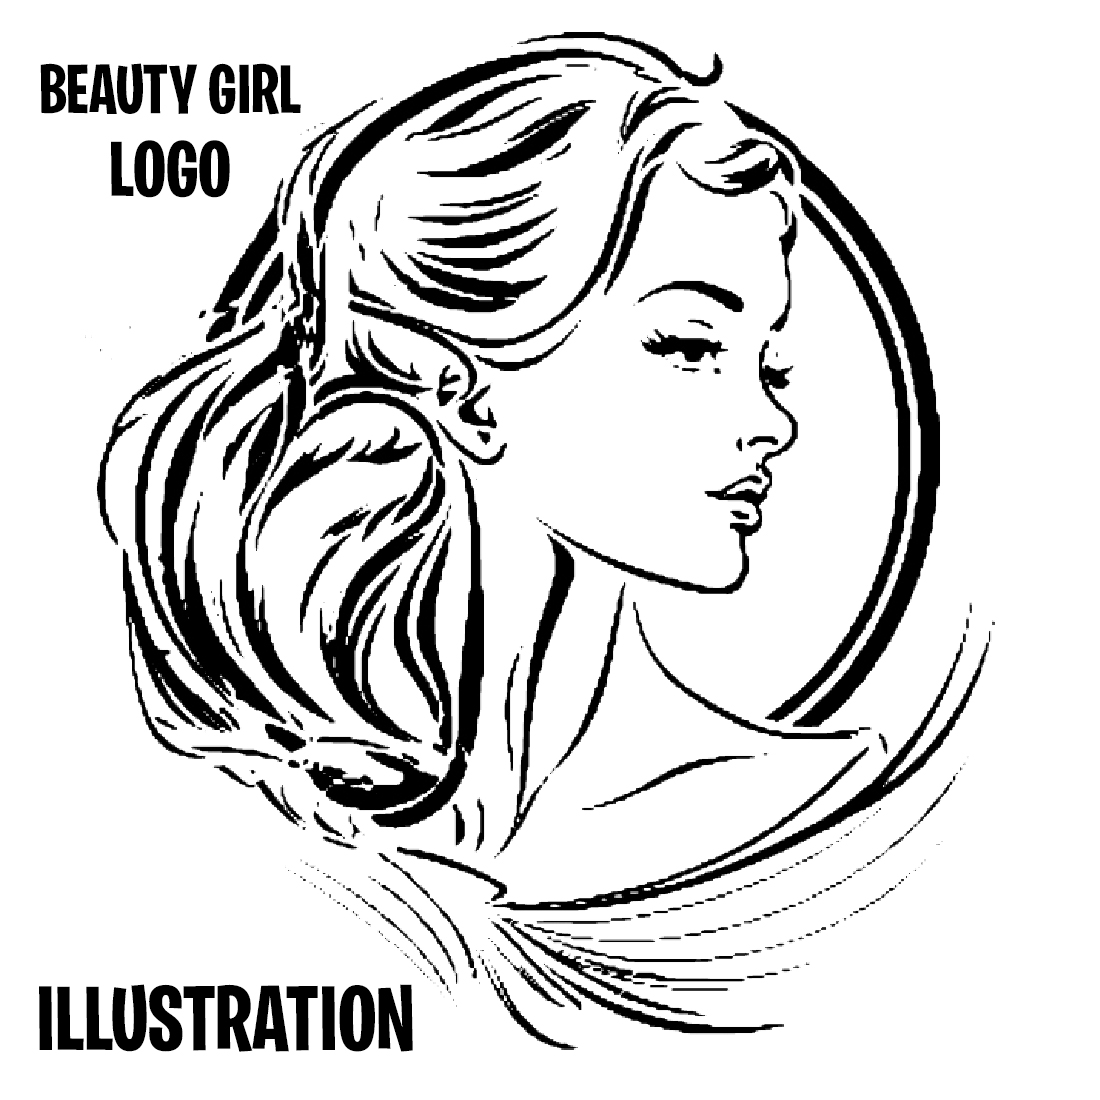 BEAUTY GIRL LOGO ILLUSTRATION cover image.